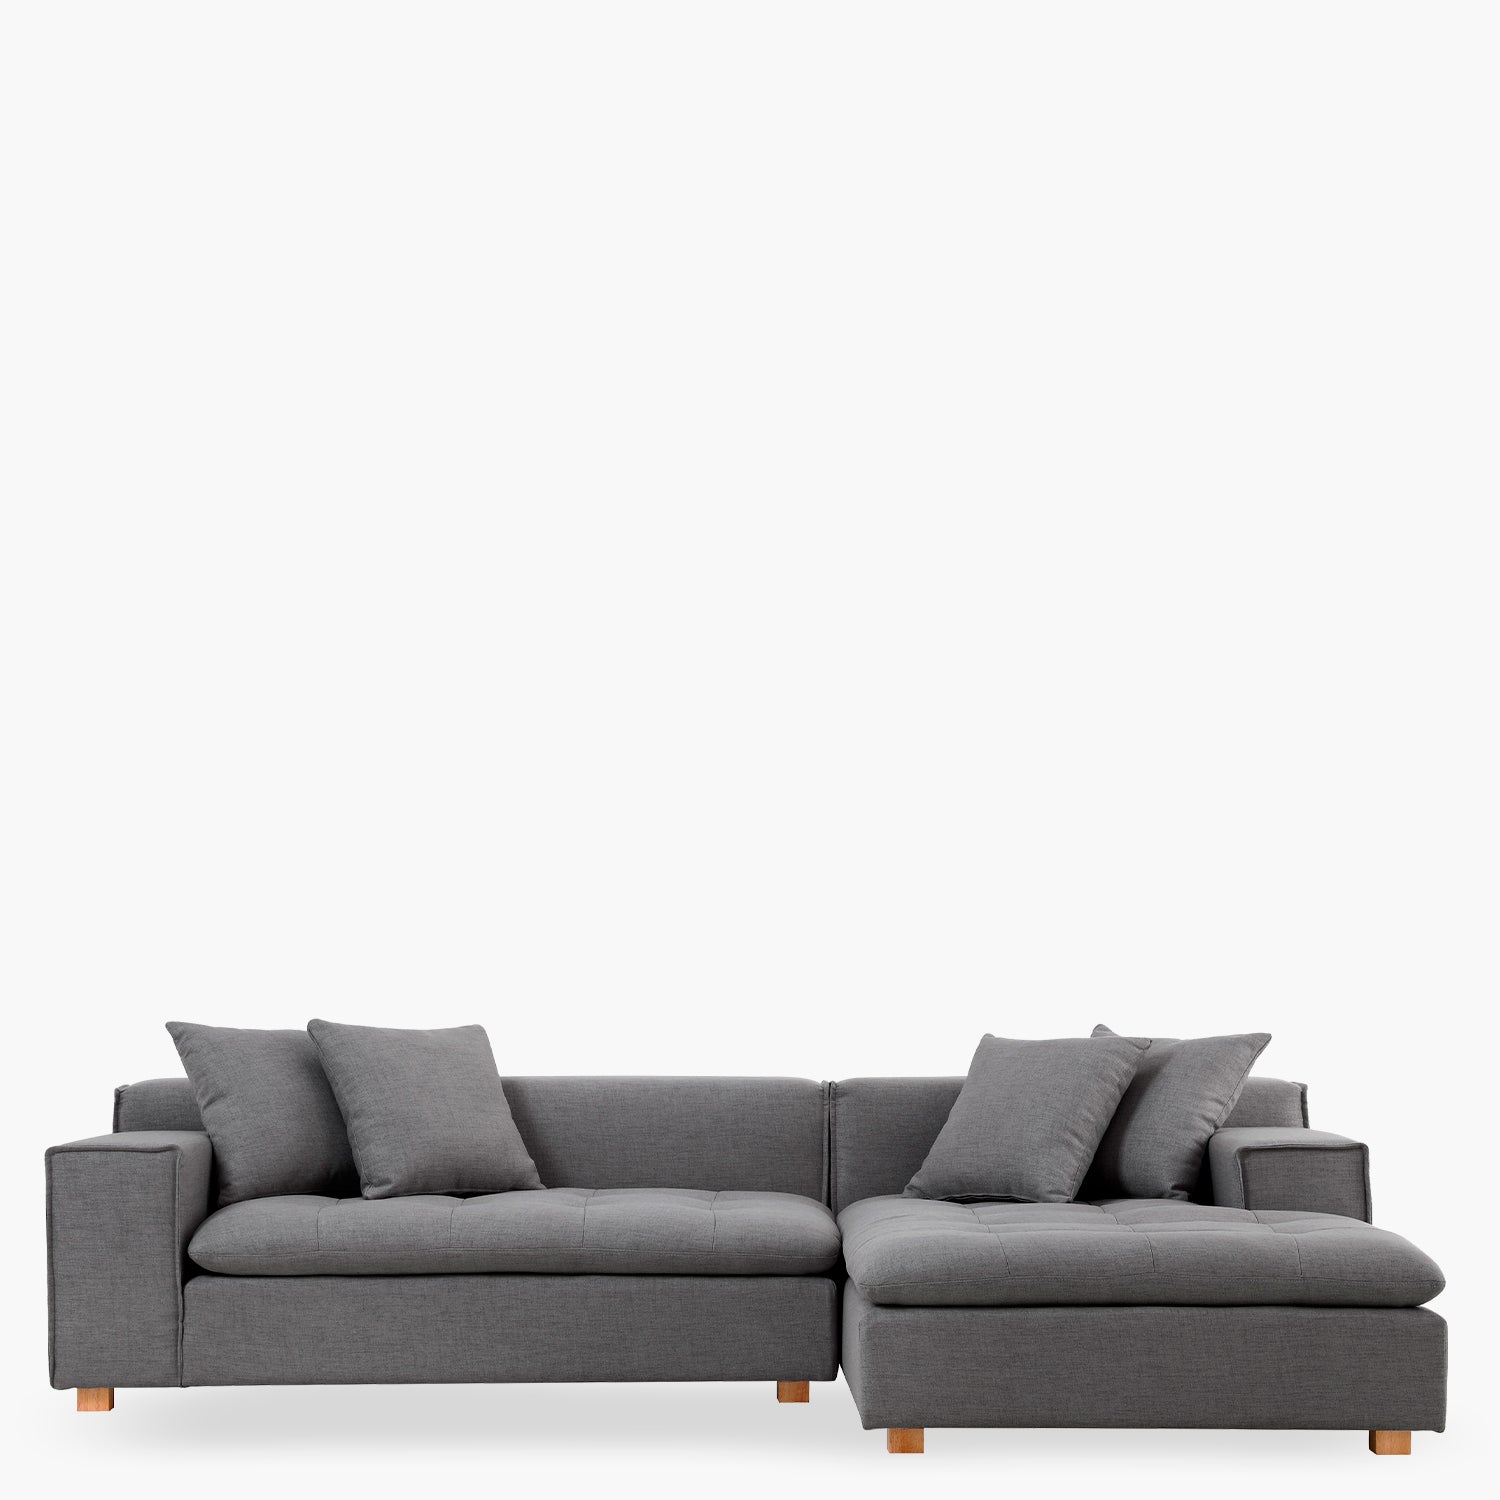 Seccional Forma gris der - Form Design - Sofas Secciona Hogar